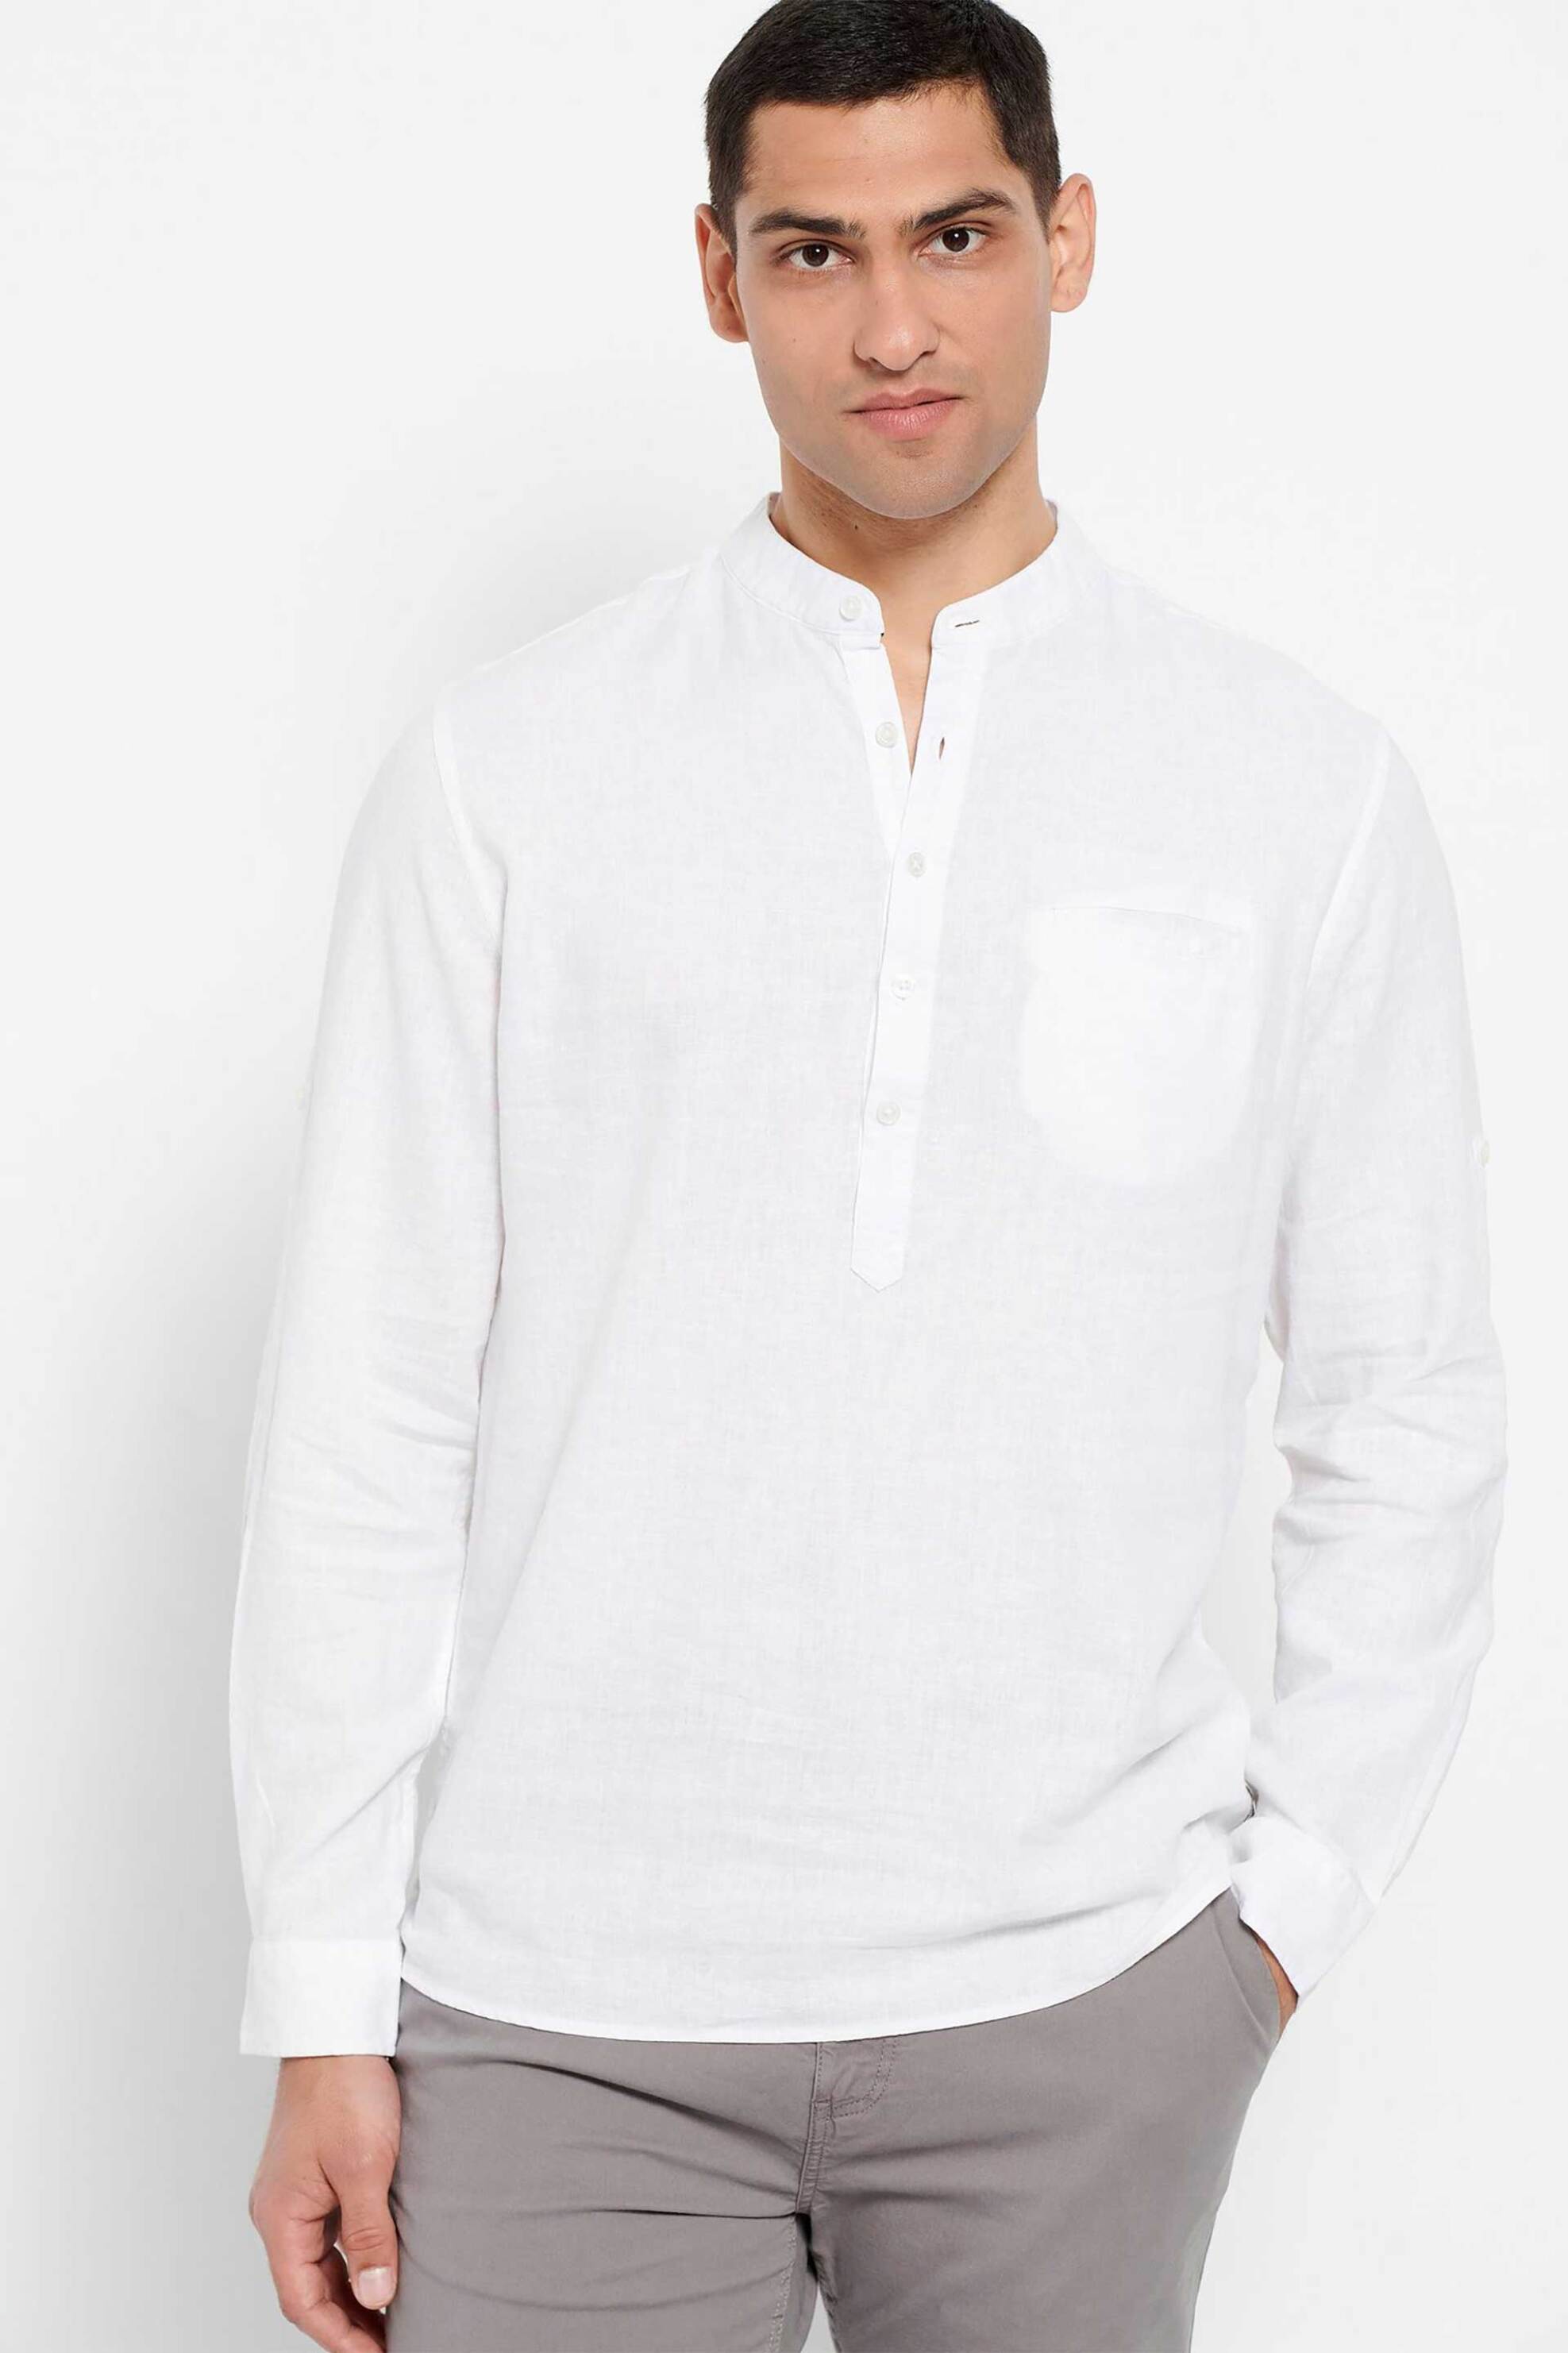 Ανδρική Μόδα > Ανδρικά Ρούχα > Ανδρικές Μπλούζες > Ανδρικές Μπλούζες Μακρυμάνικες Funky Buddha ανδρική μπλούζα από λινό μονόχρωμη με logo patch - FBM007-078-05 Λευκό